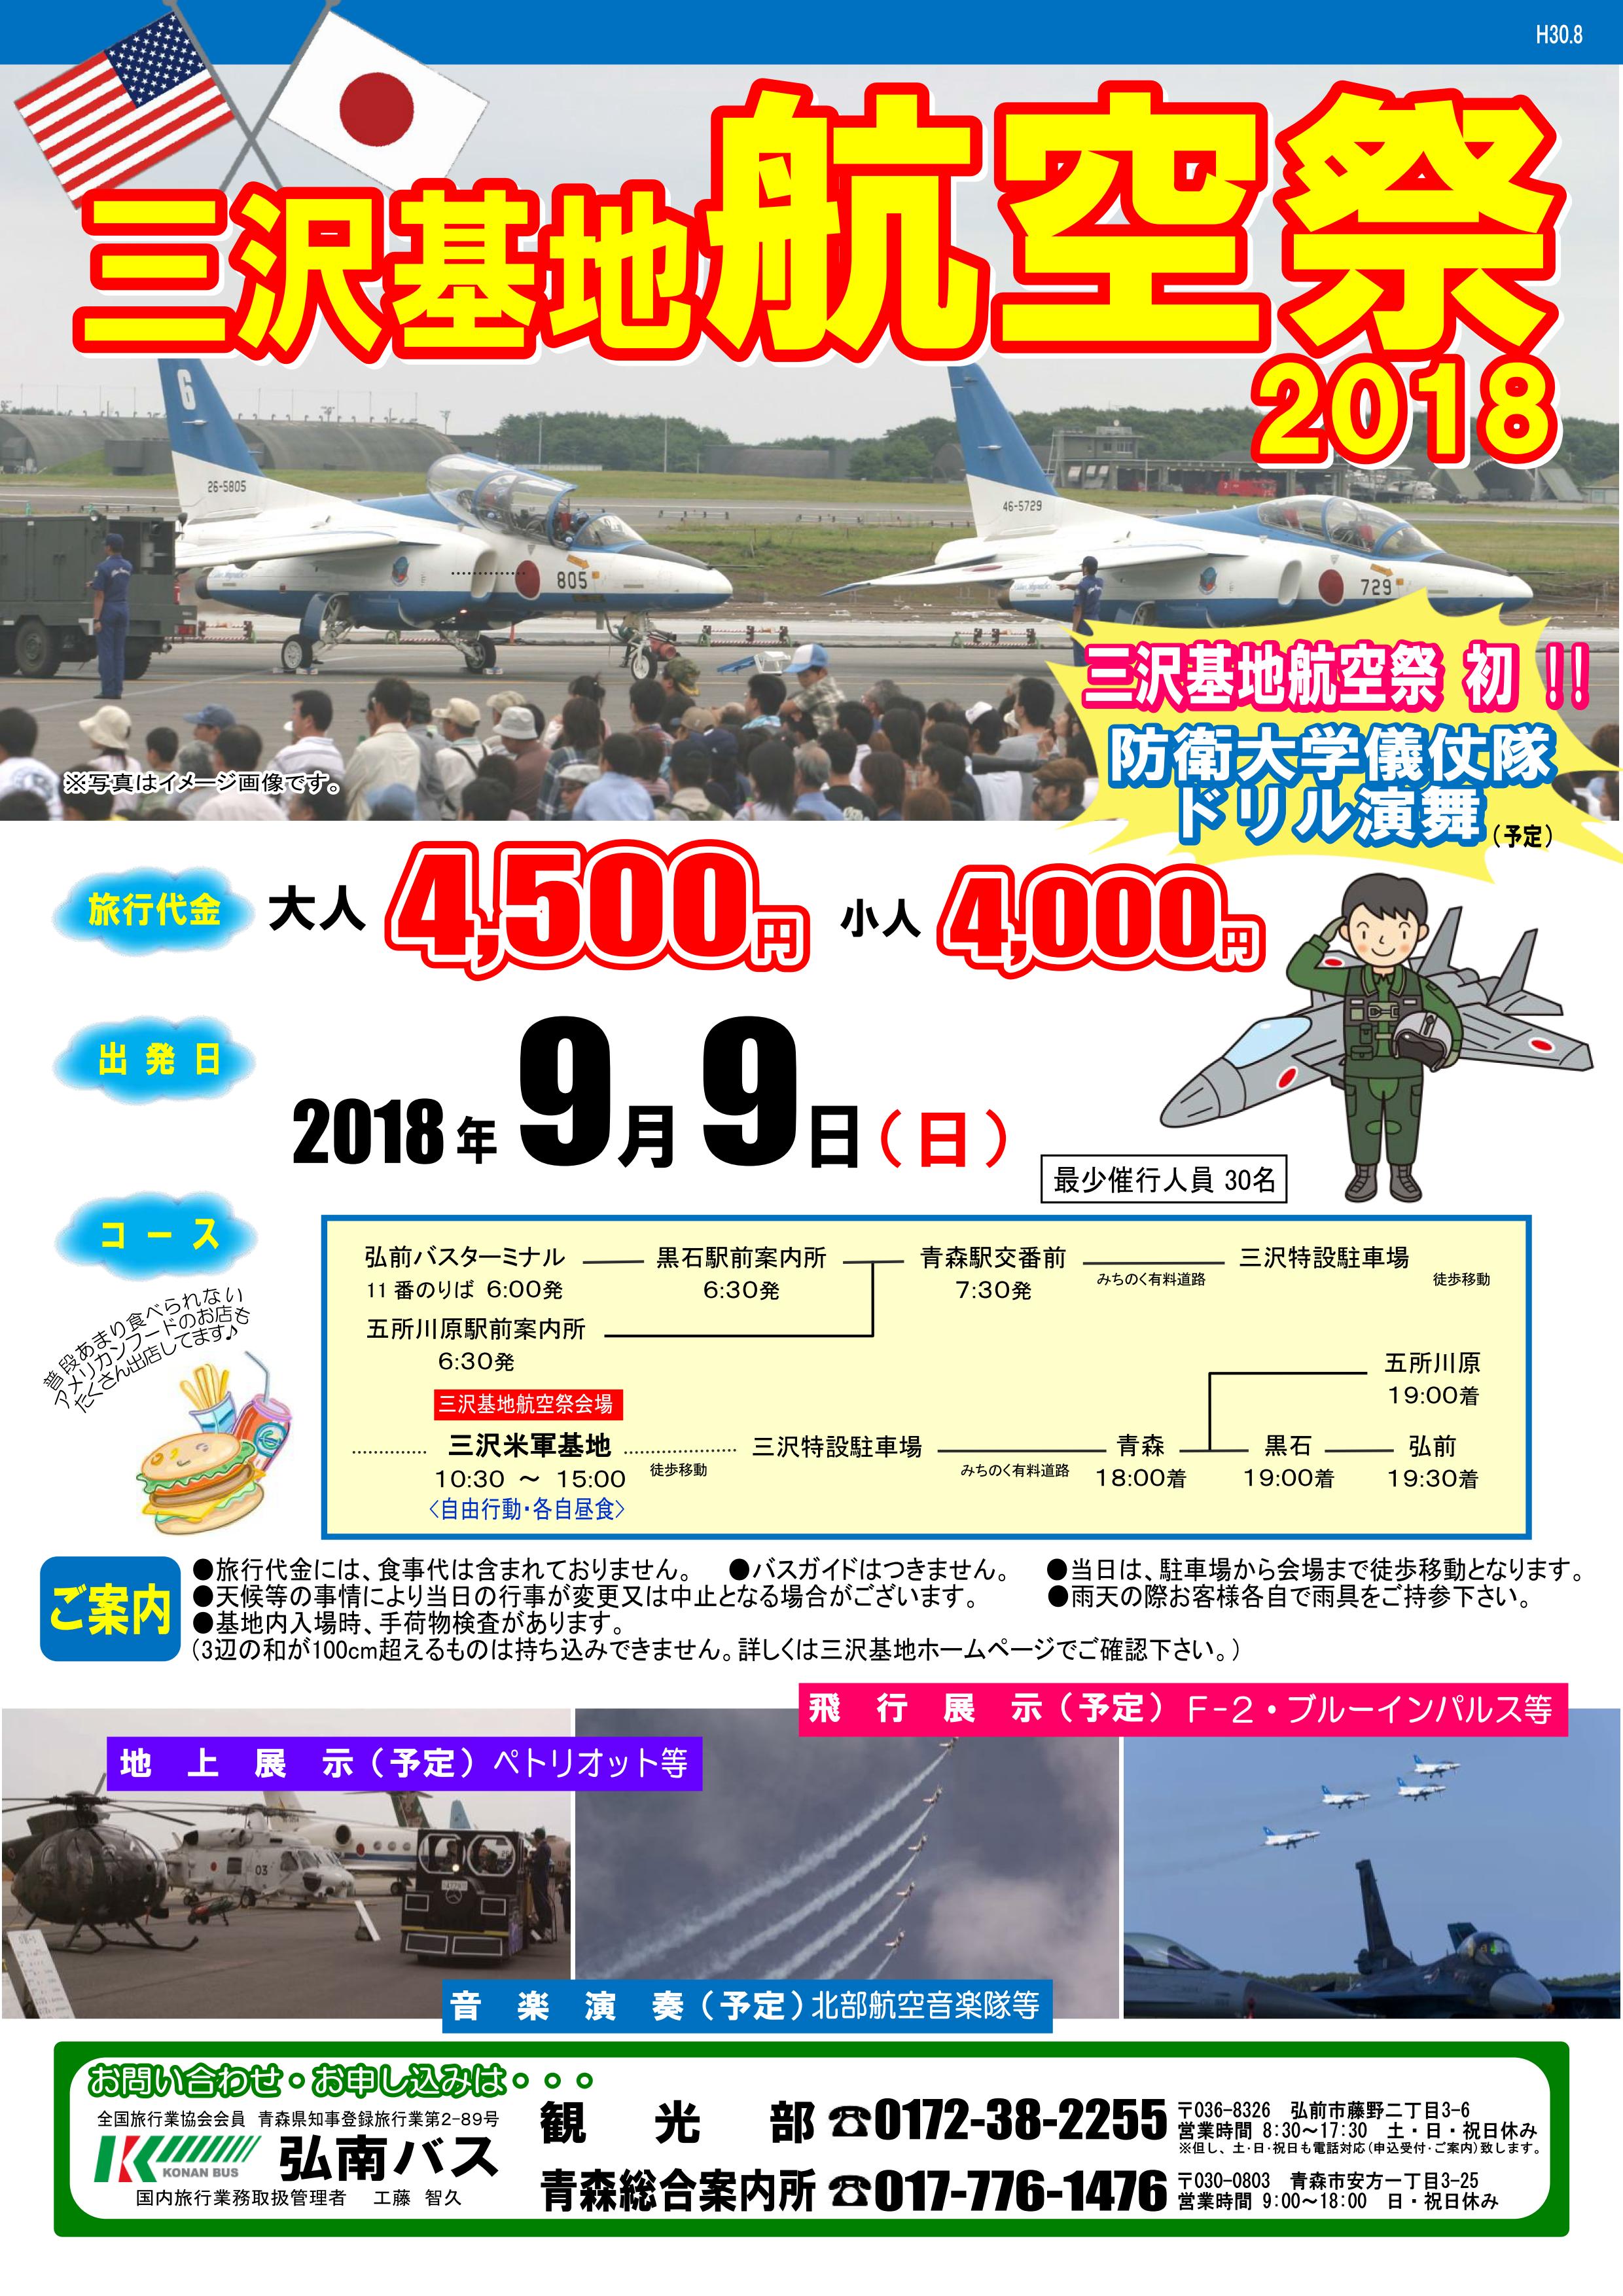 三沢基地航空祭2018